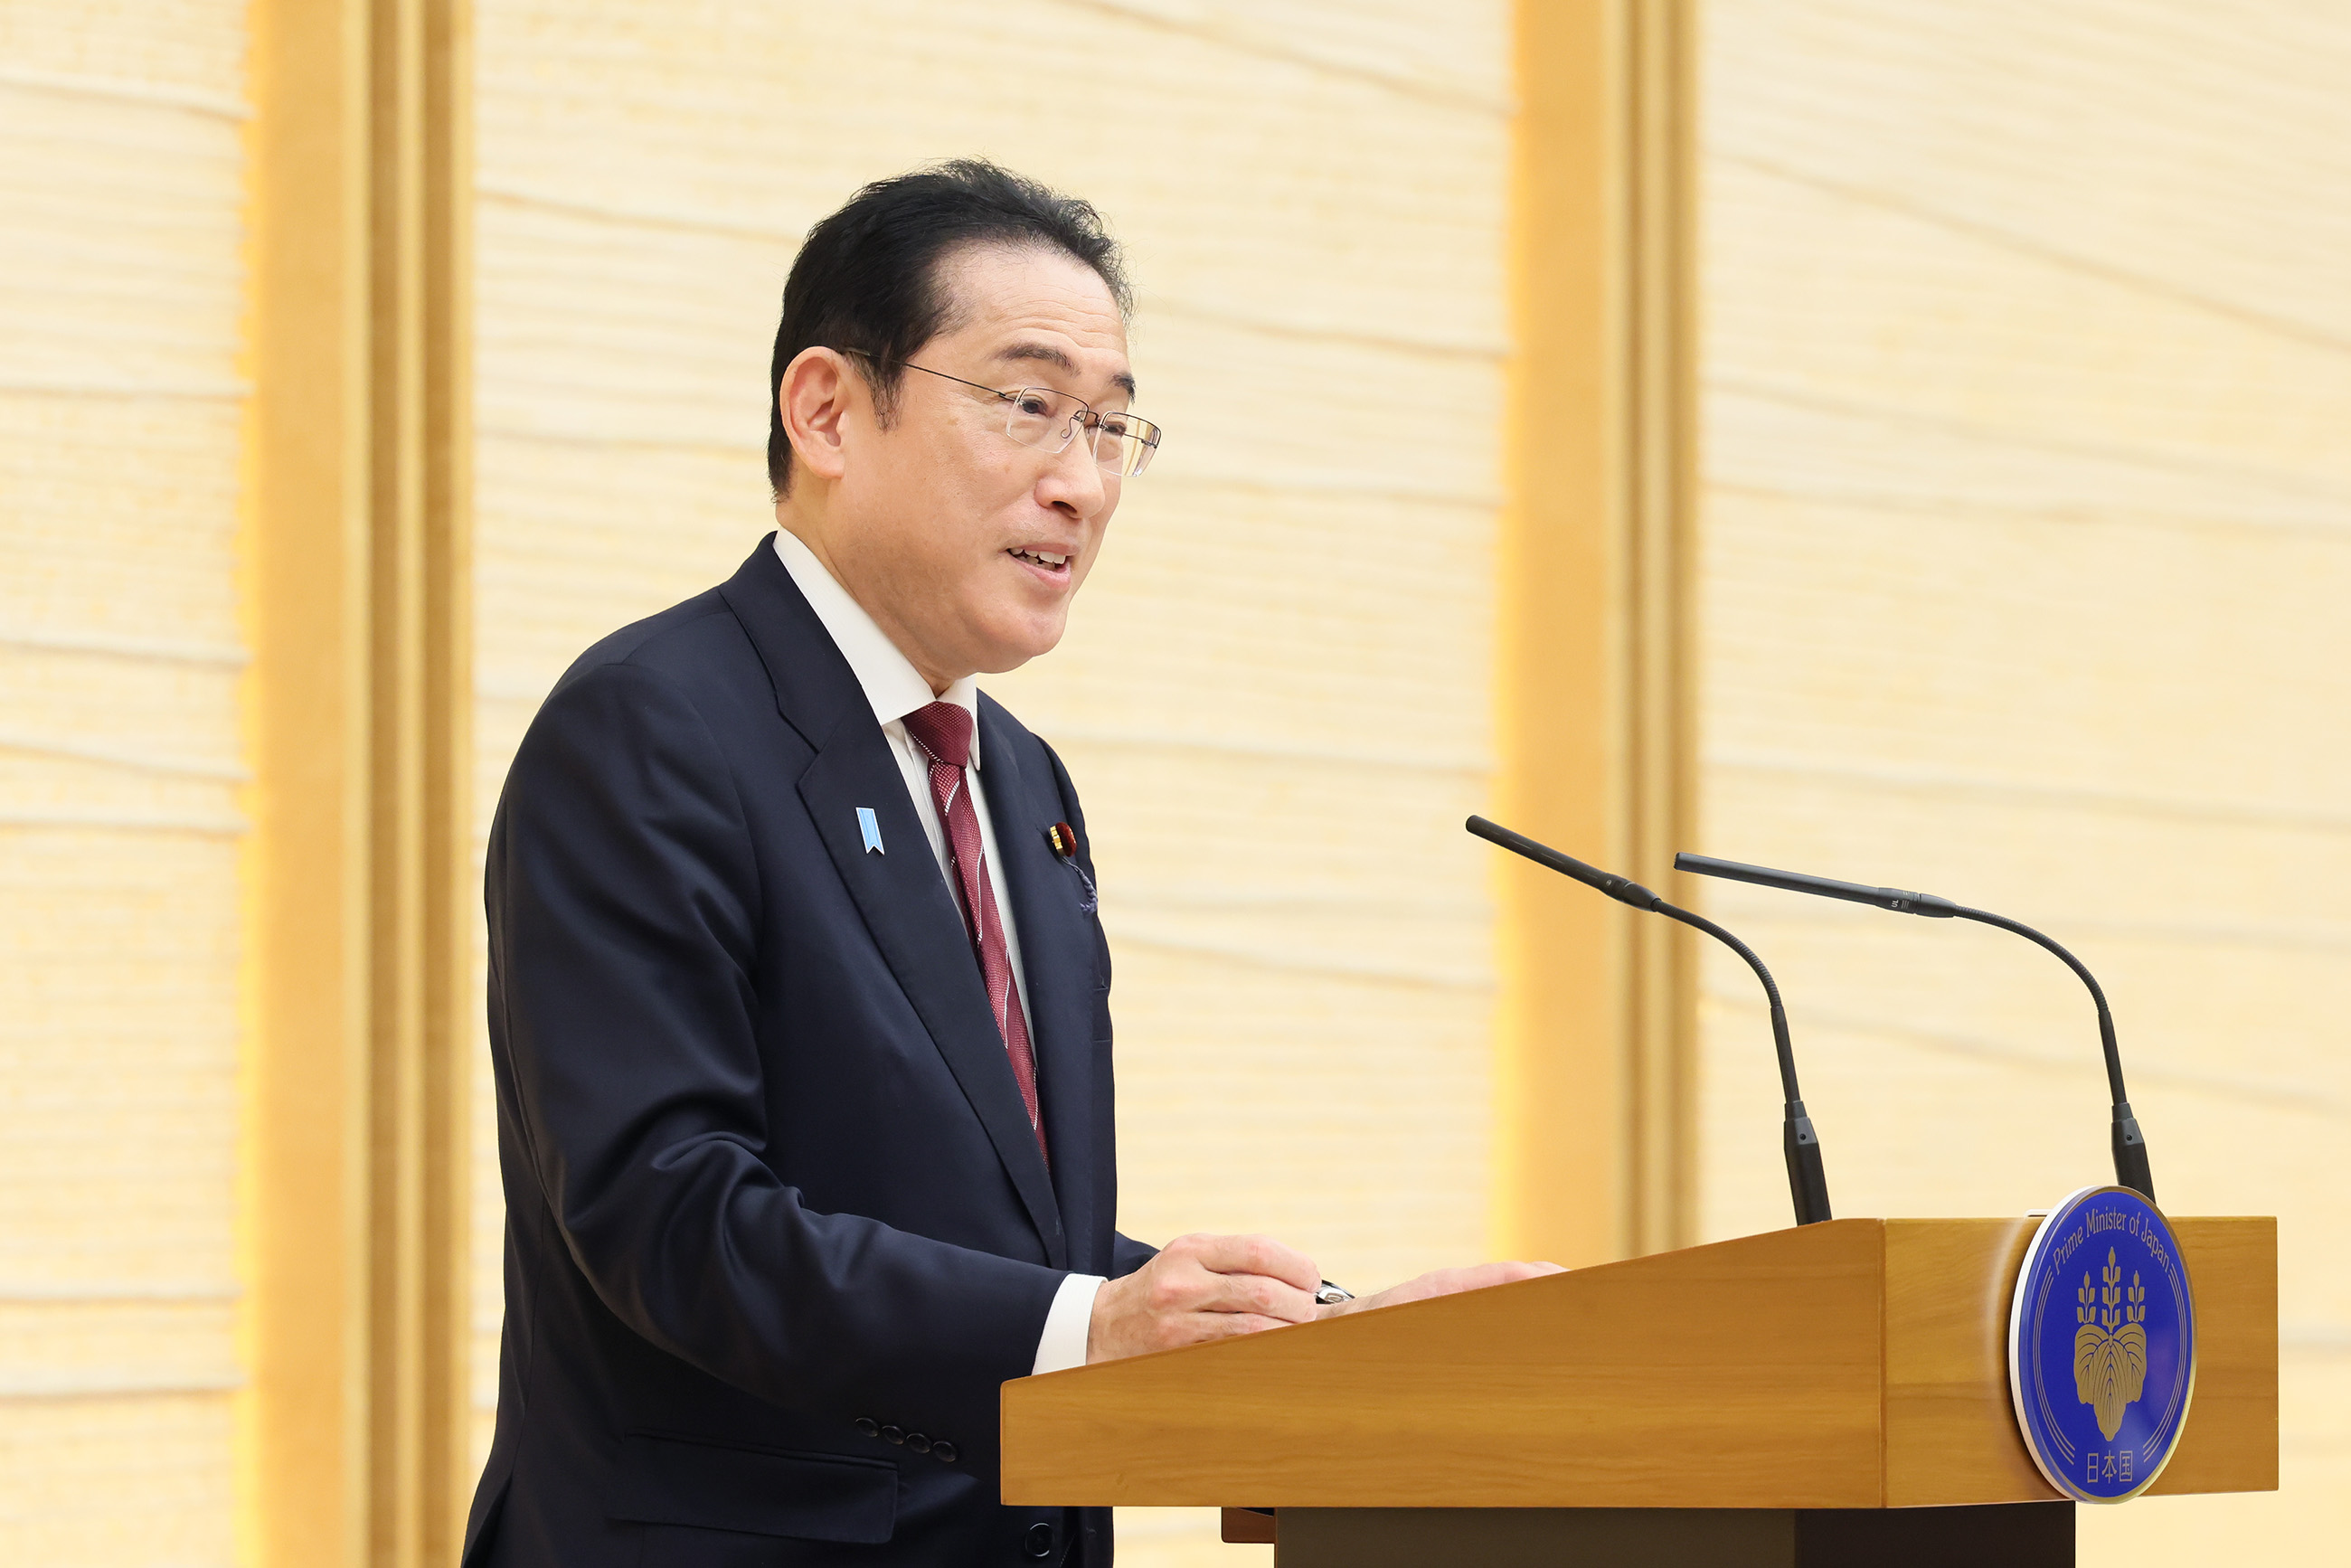 Prime Minister Kishida delivering an address (1)